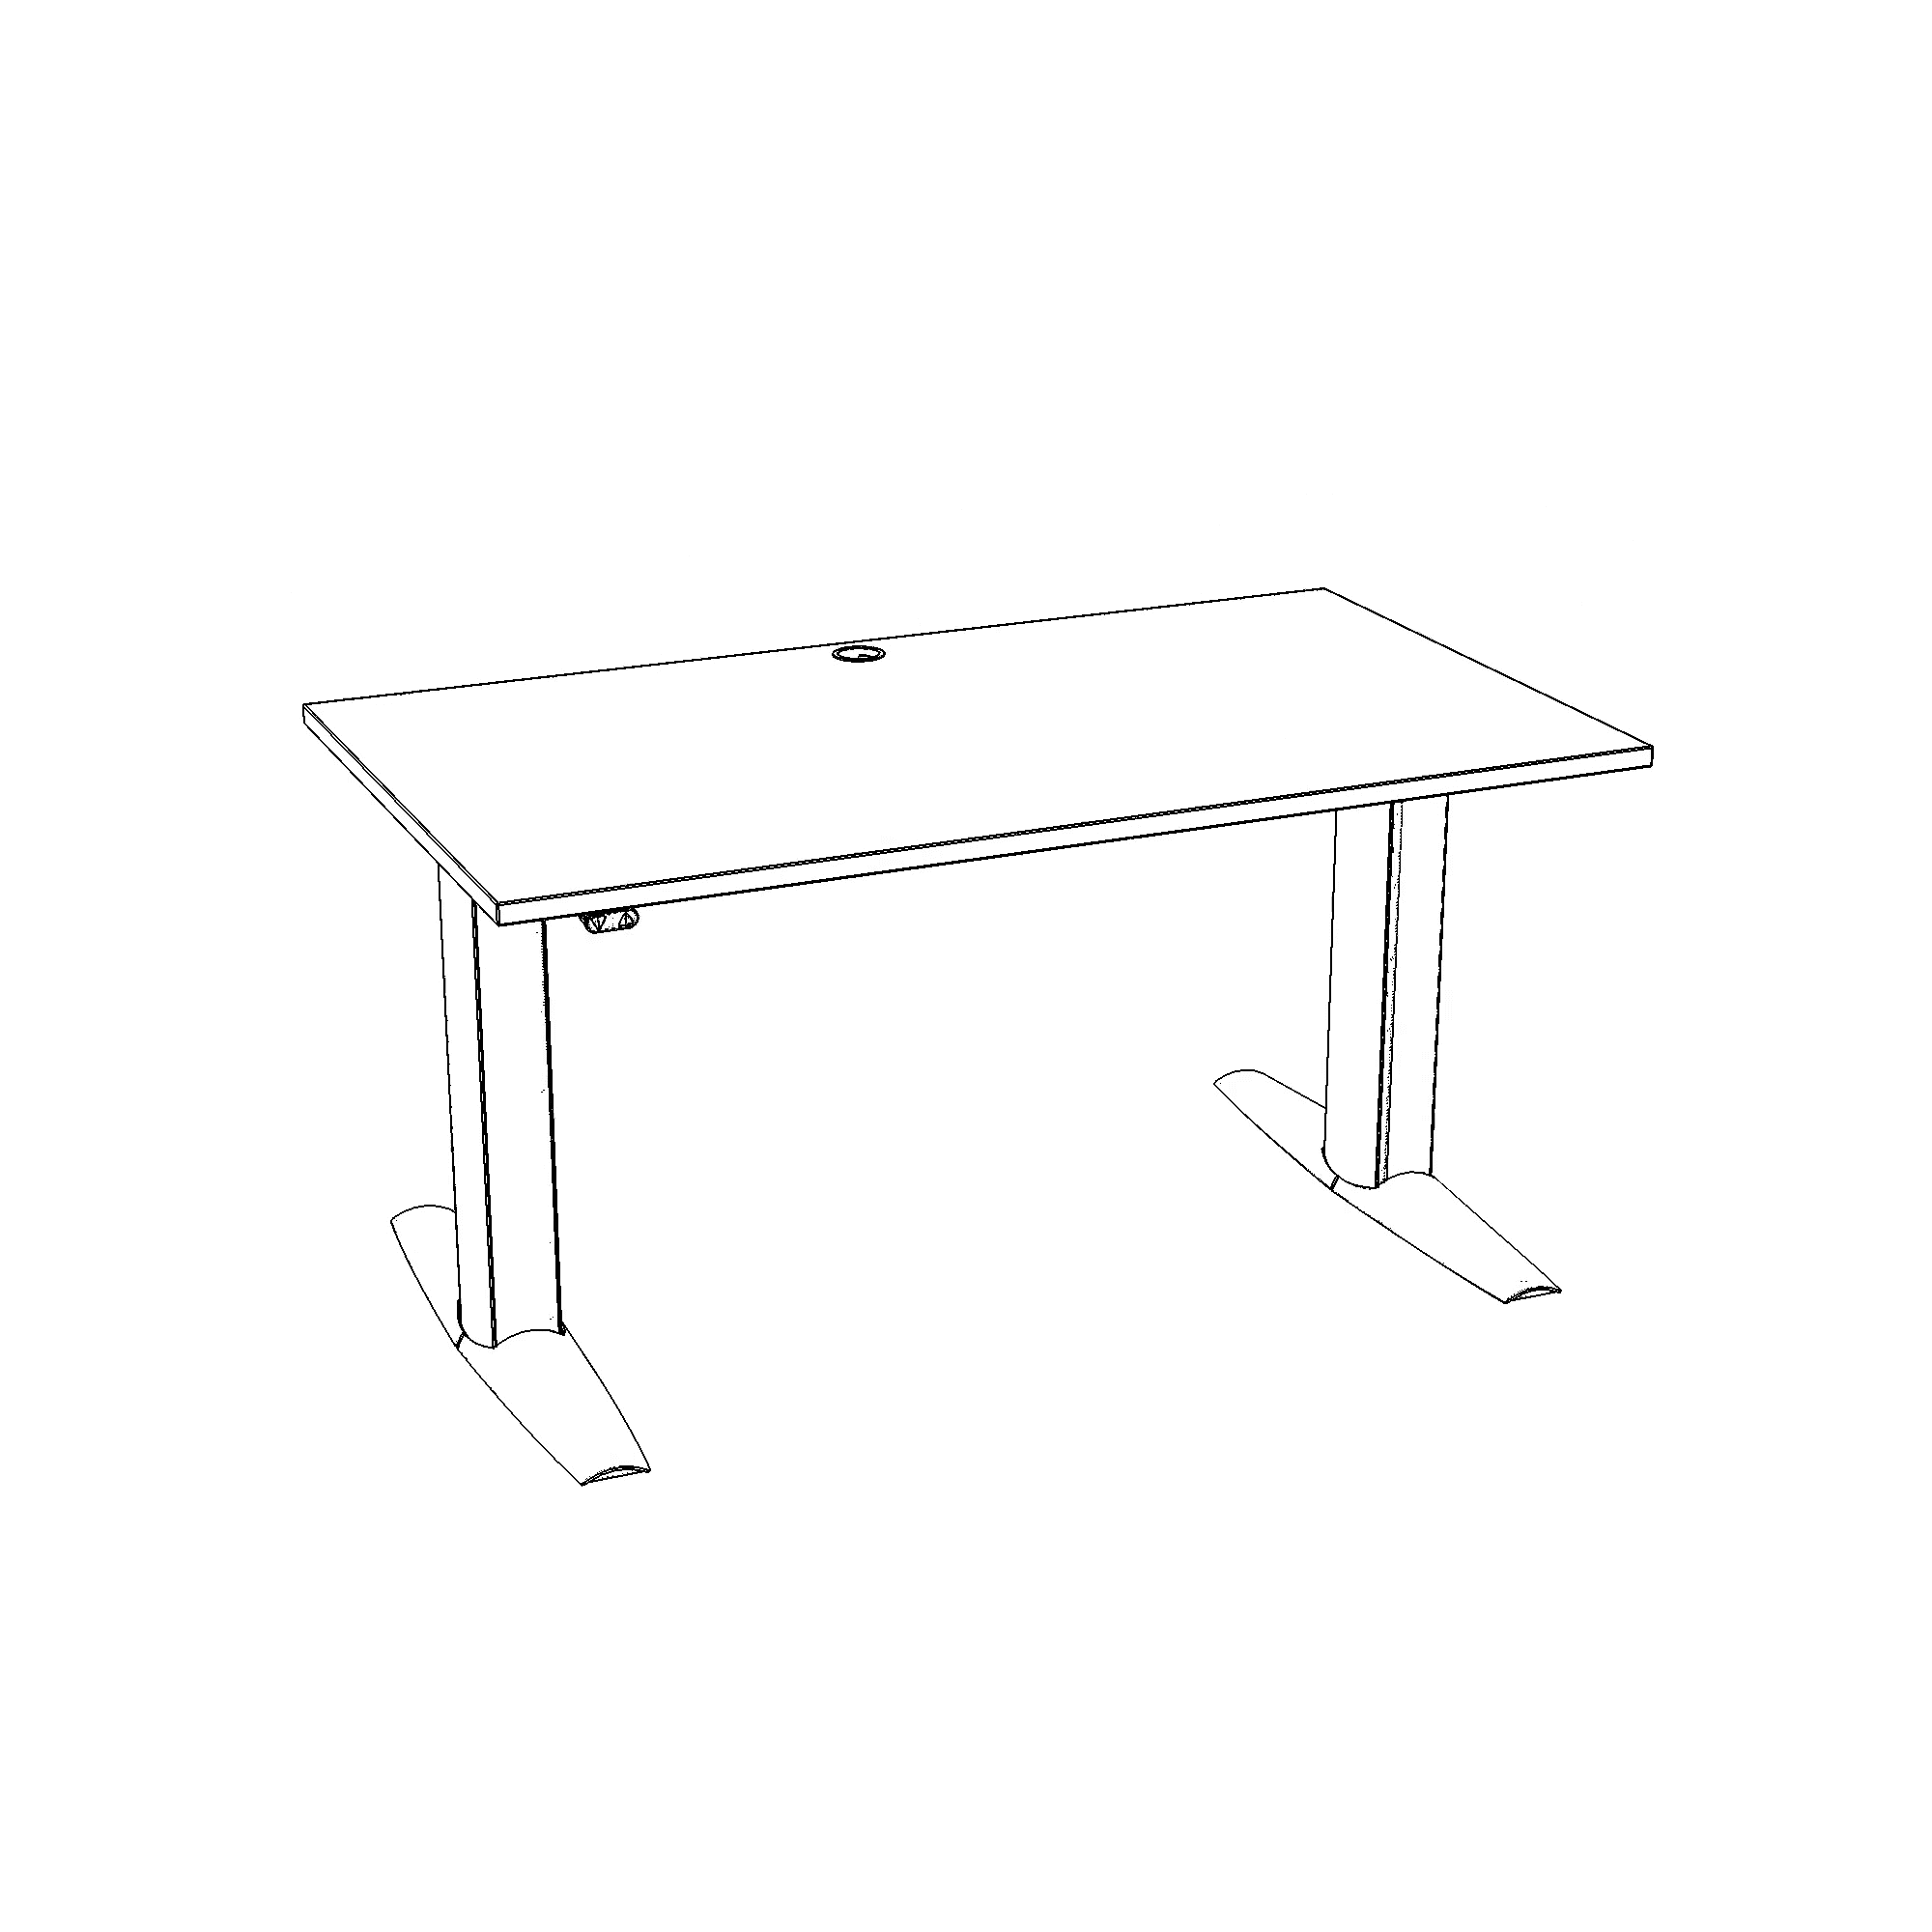 Elektrisch verstelbaar bureau | 140x80 cm | Beuken met zilver frame